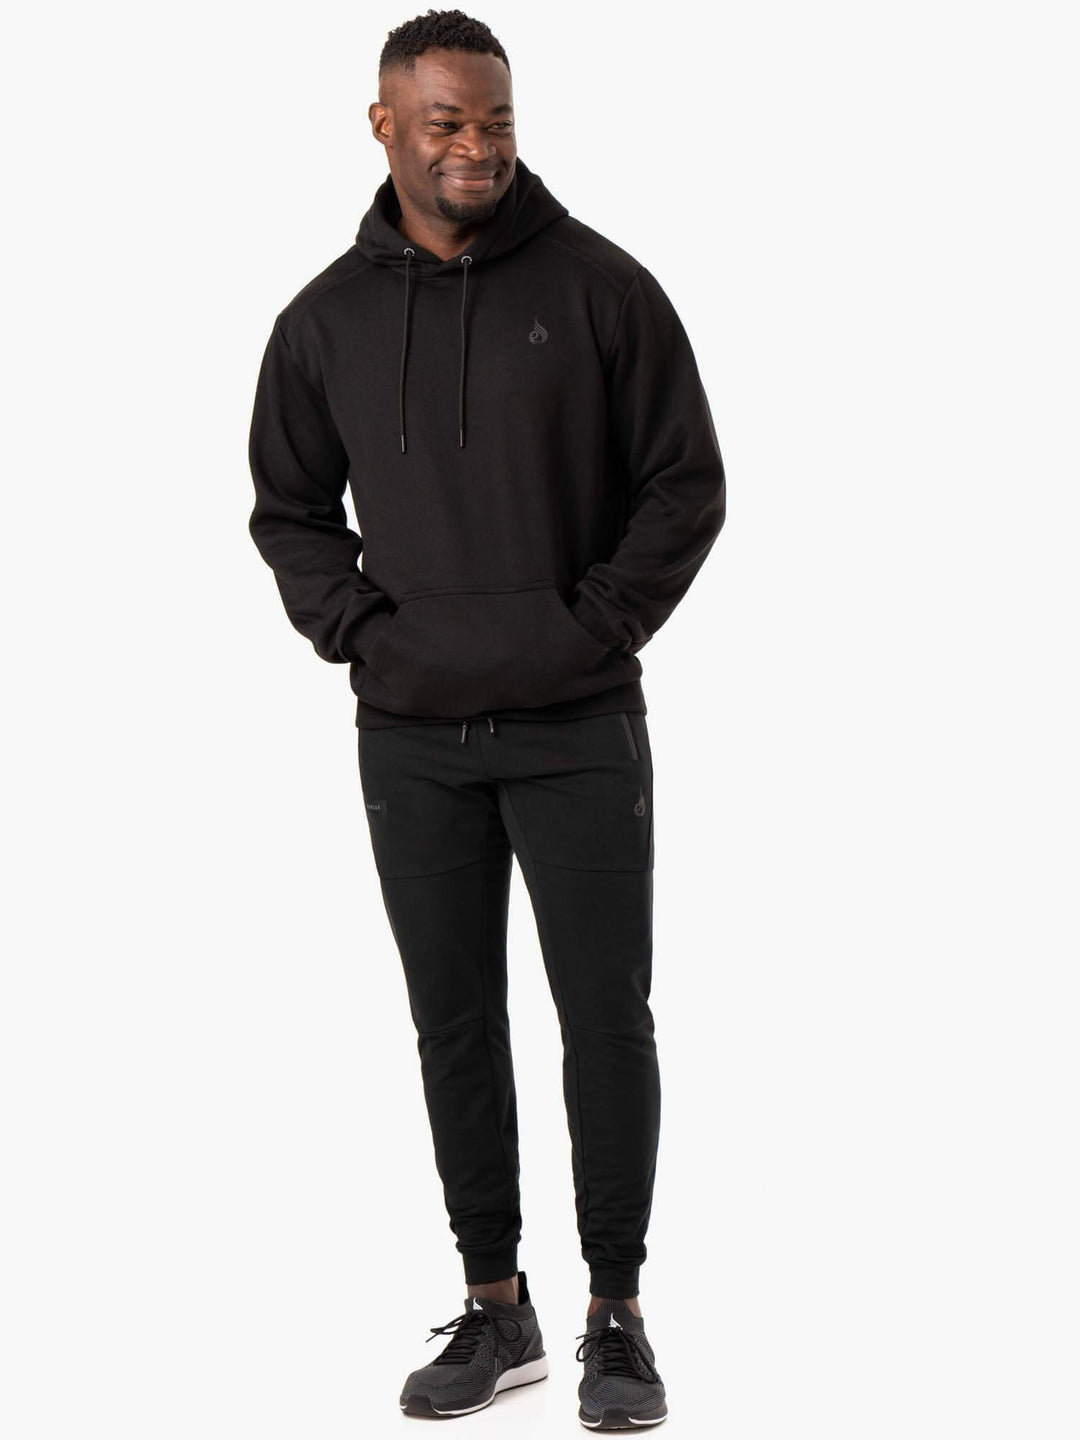 Reset Pullover Hoodie - Black Clothing Ryderwear 